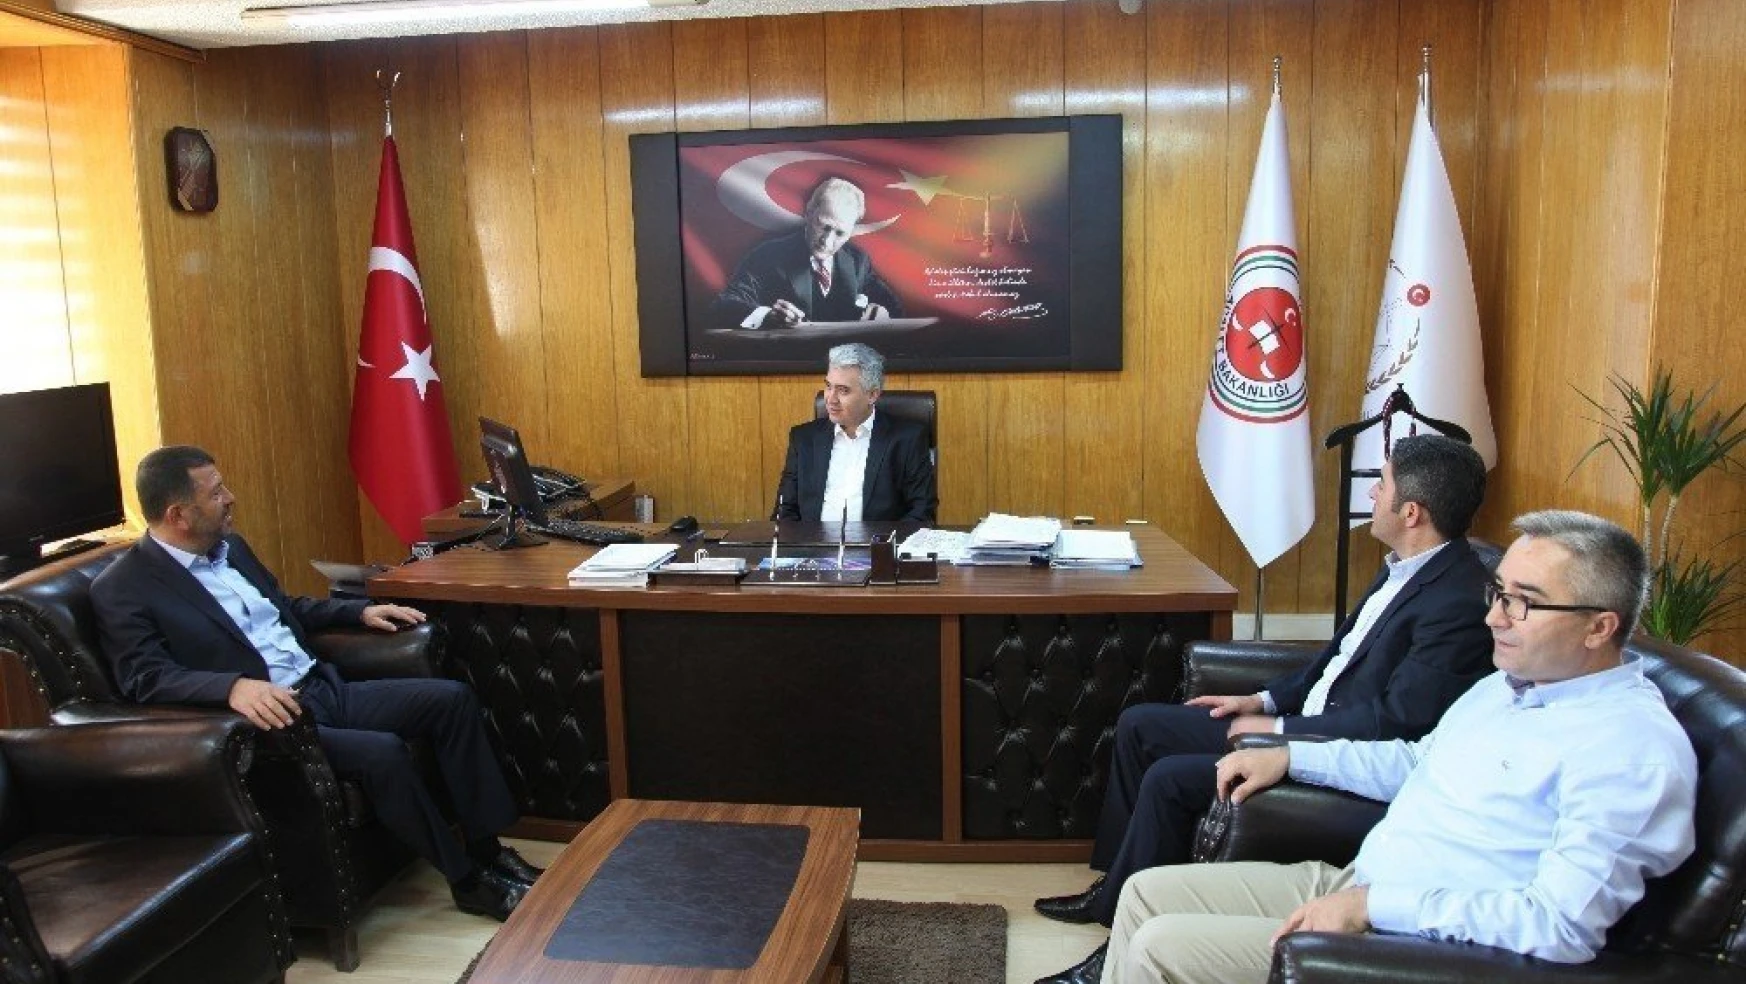 CHP Genel Başkan Yardımcısı Veli Ağbaba:
